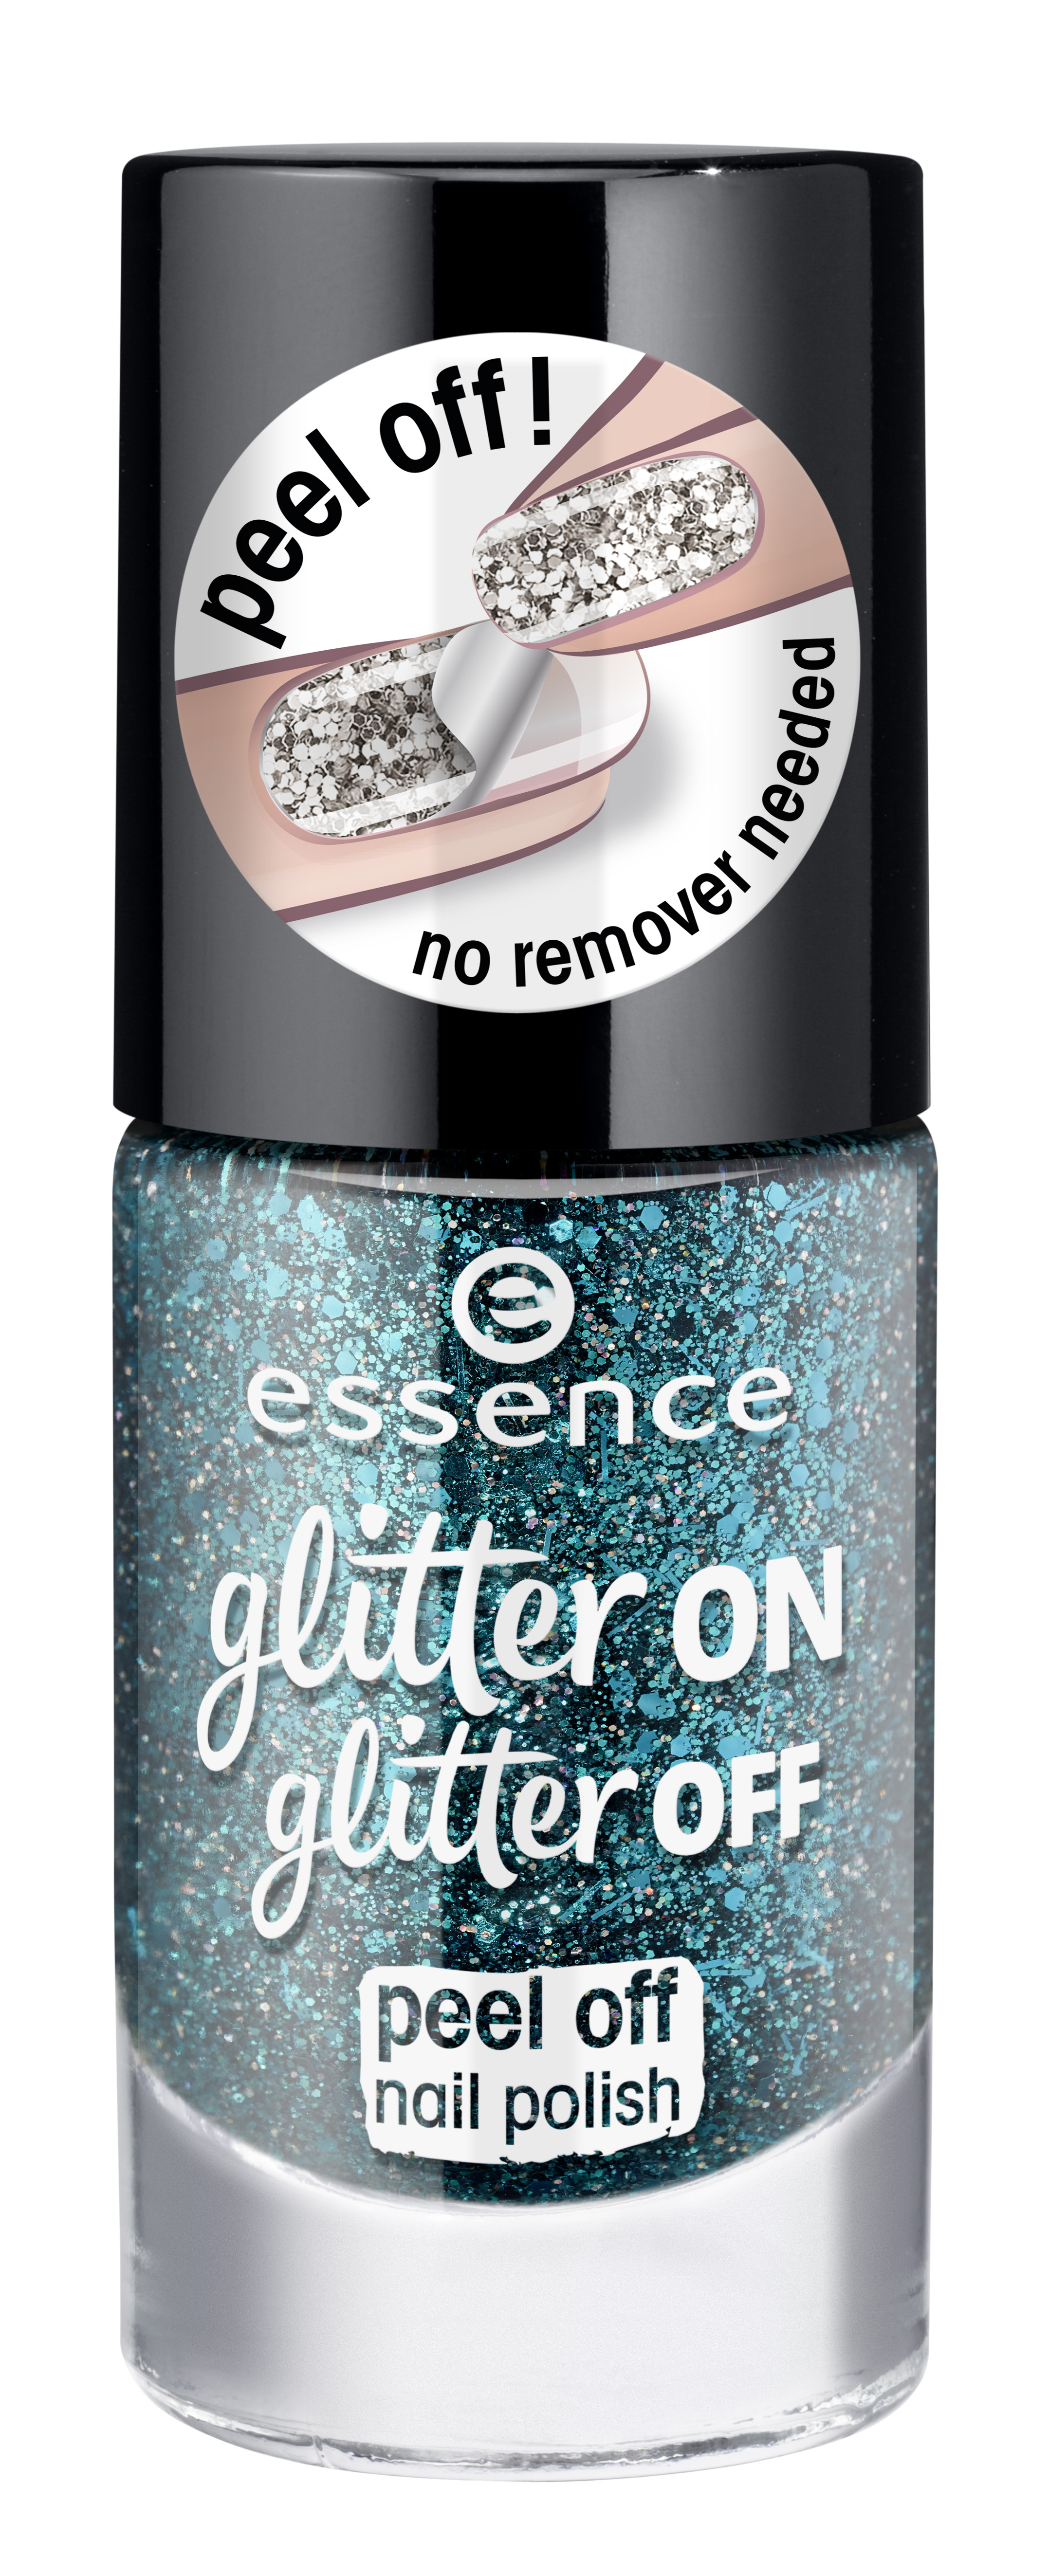 essence glitter on glitter off peel off nail polish 06